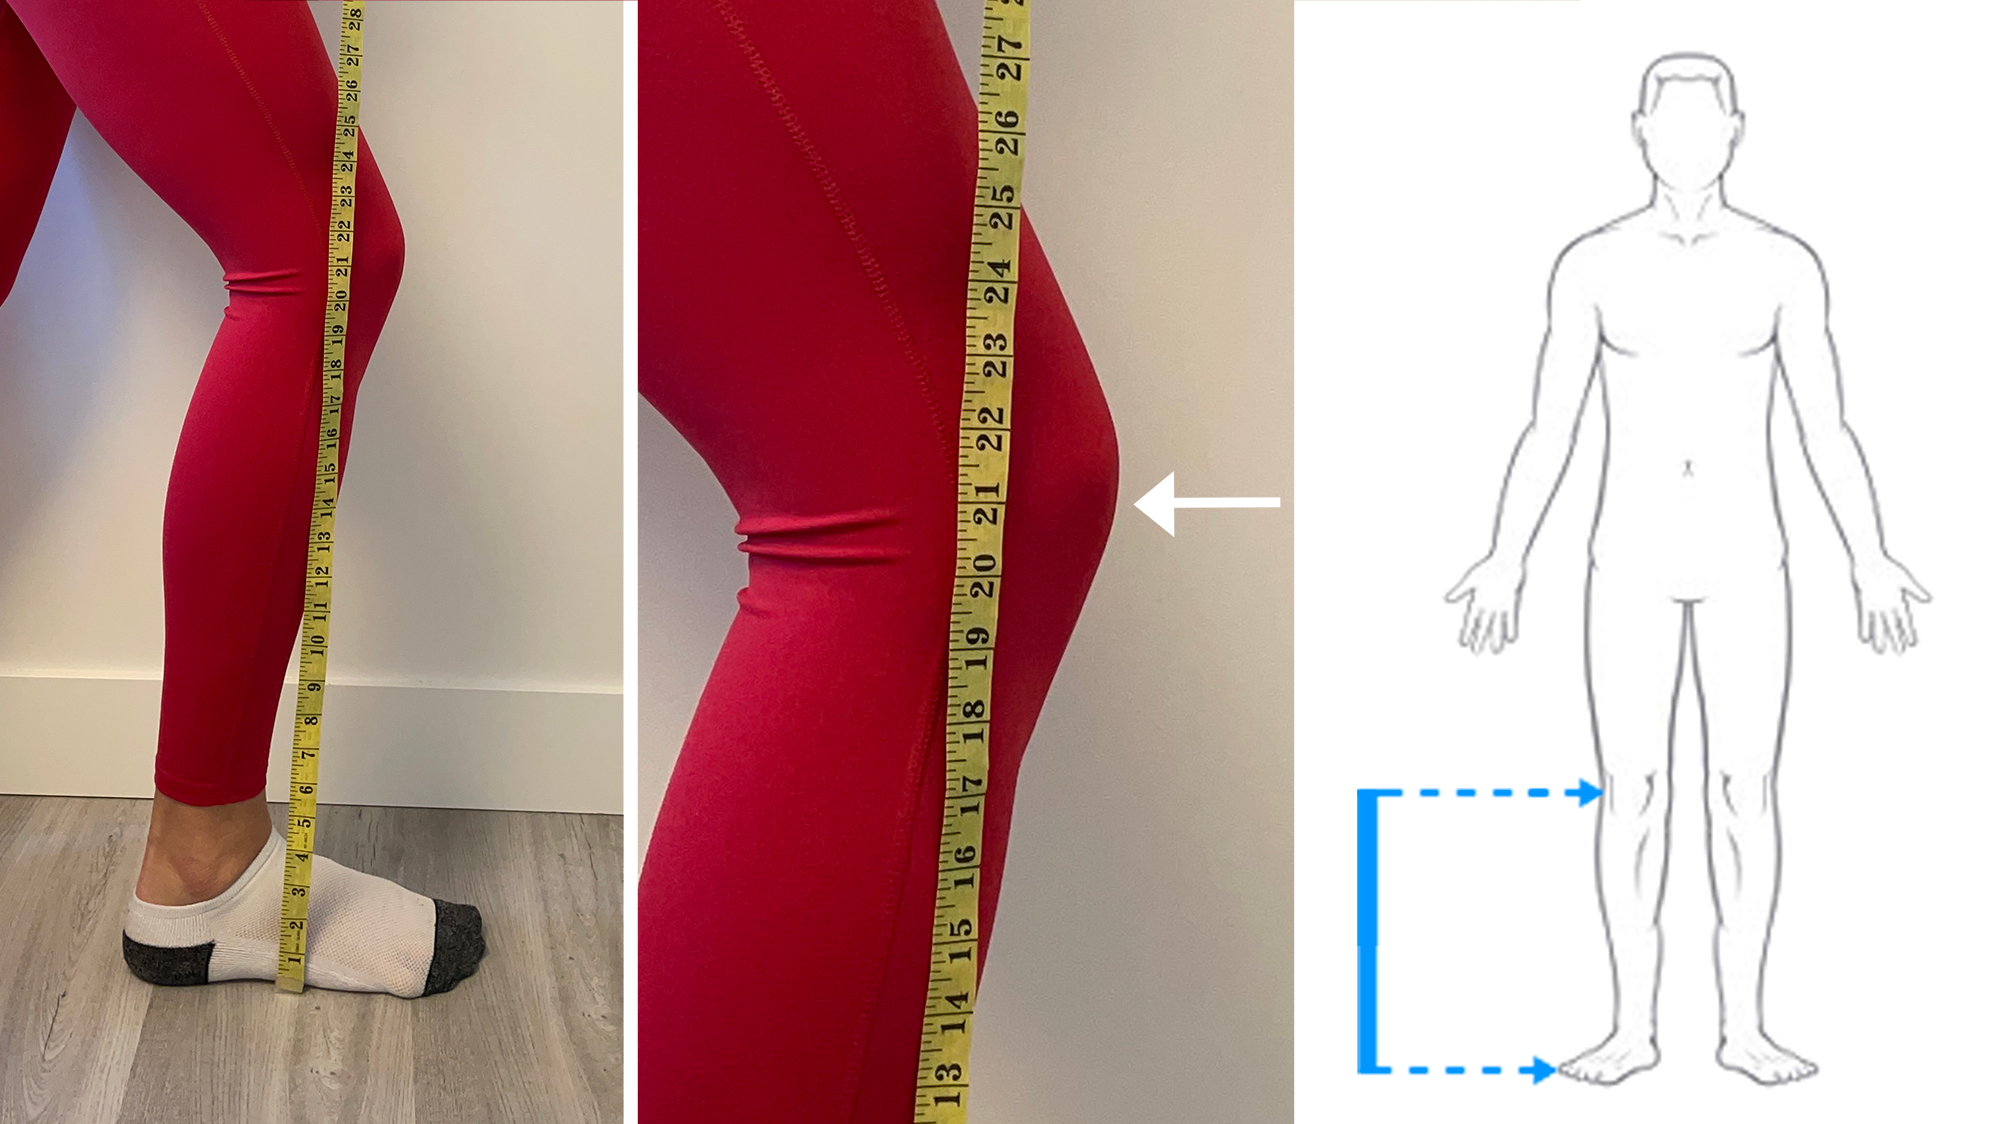 Floor to knee measurement